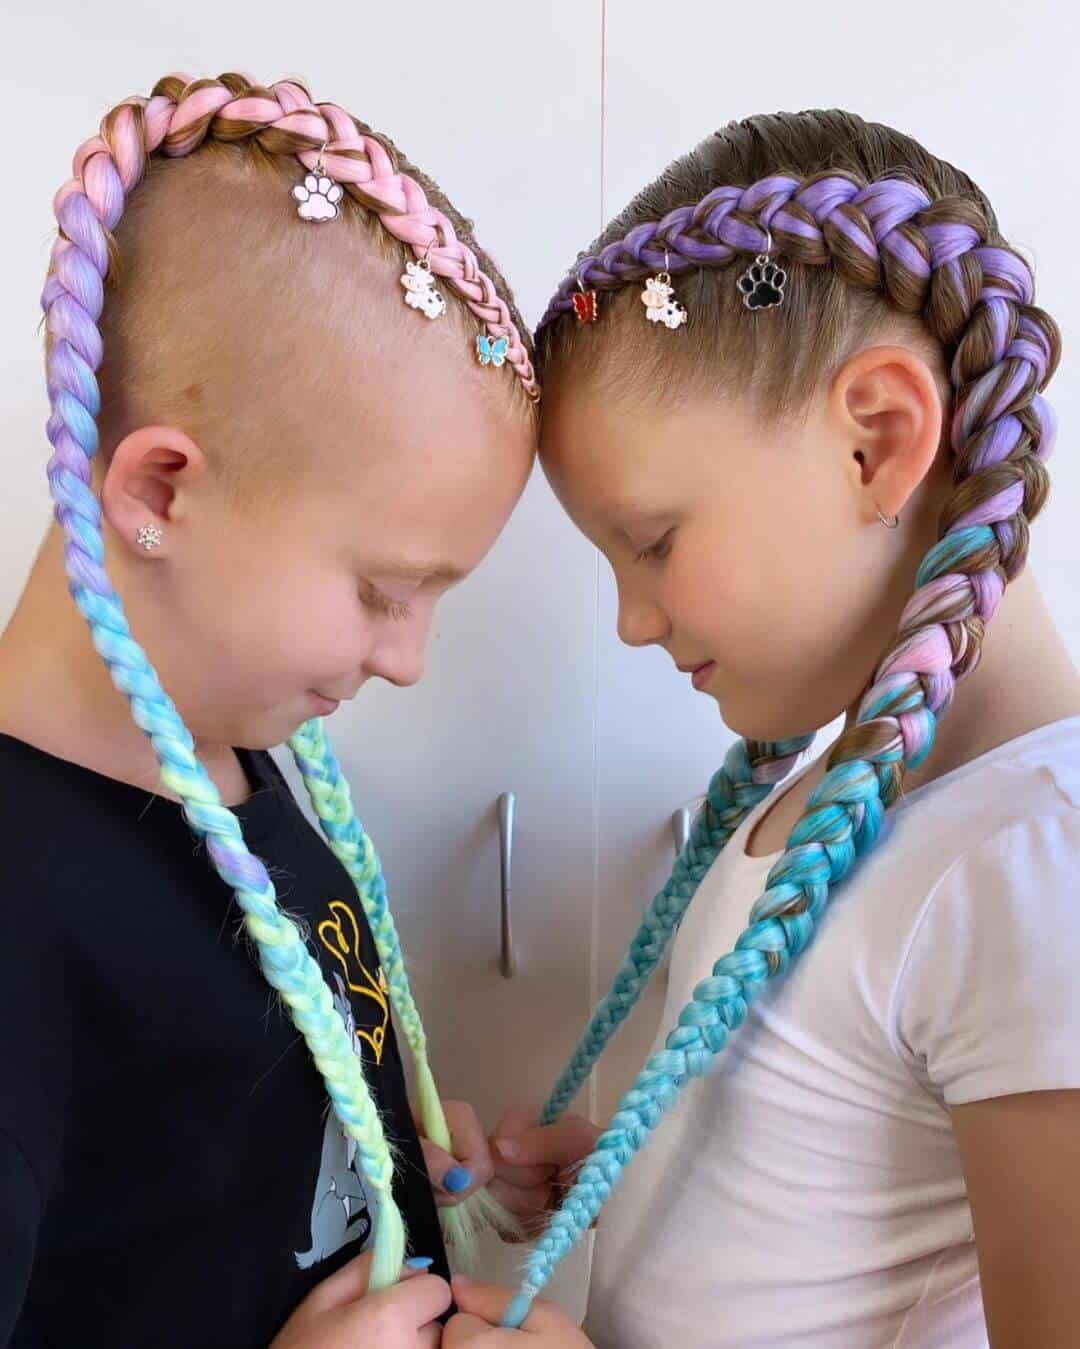 Colourful braided hair